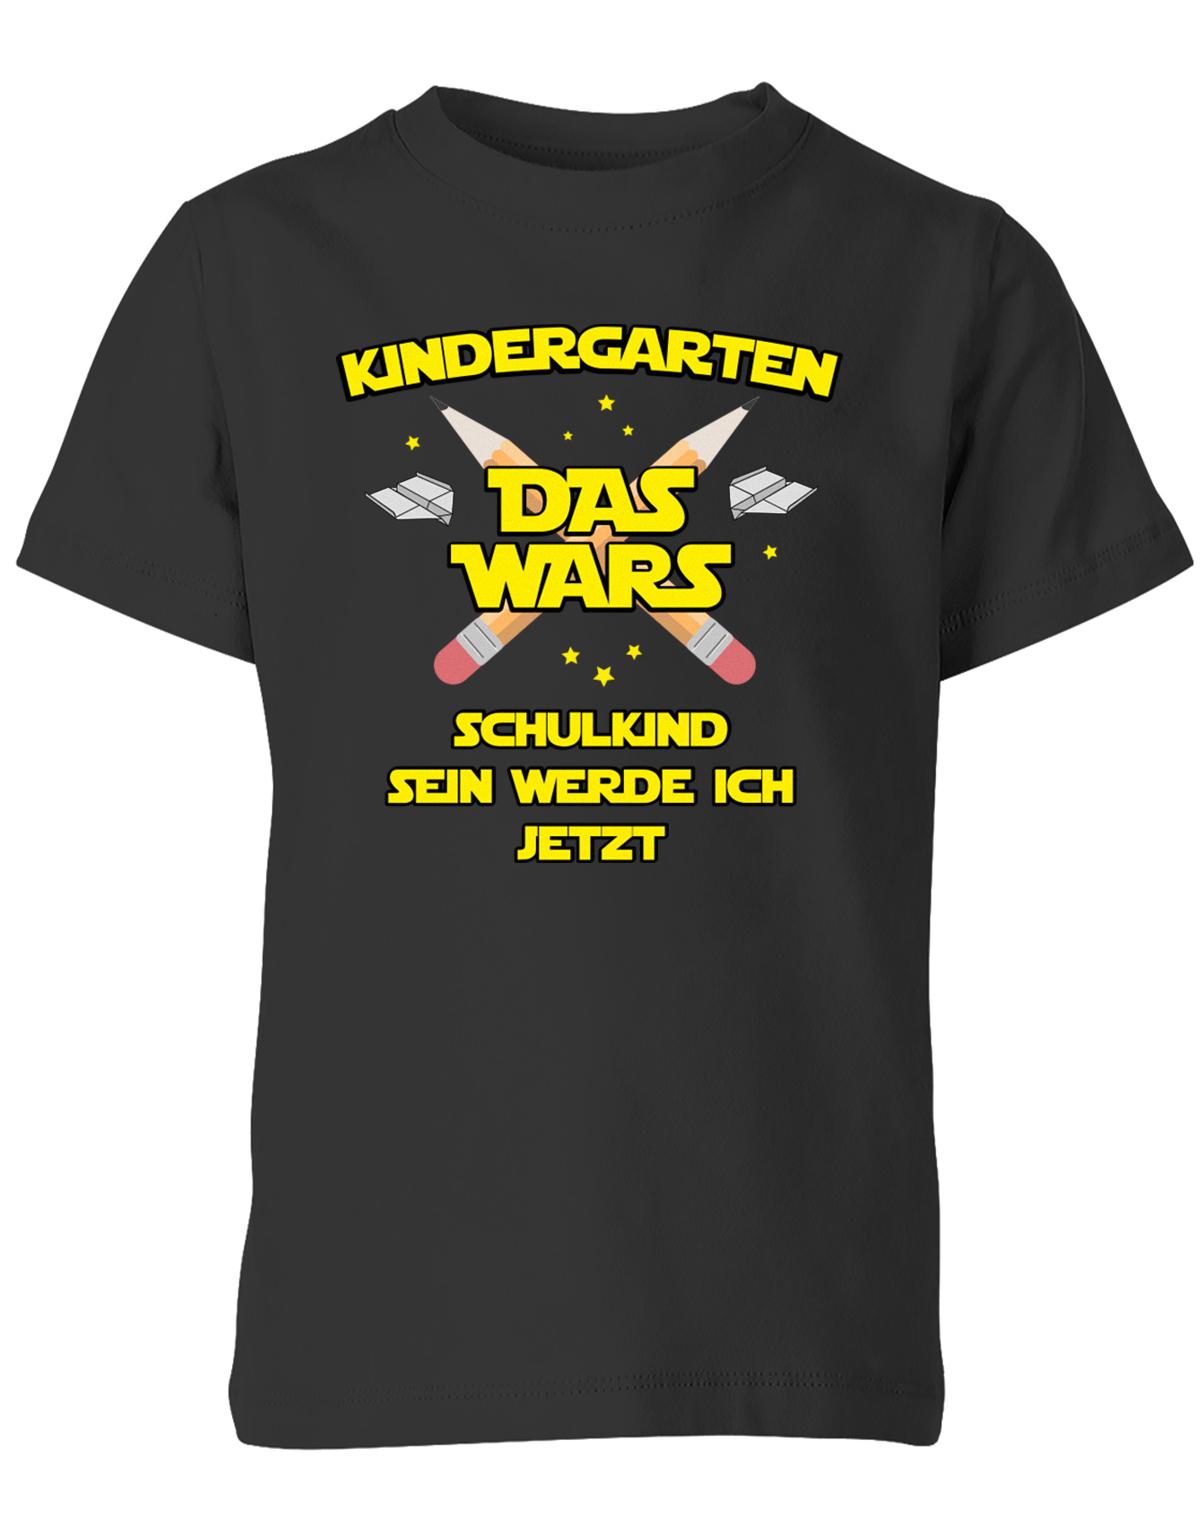 Kindergarten Das Wars Schulkind sein werde ich jetzt - Kita Abgänger Shirt Schwarz